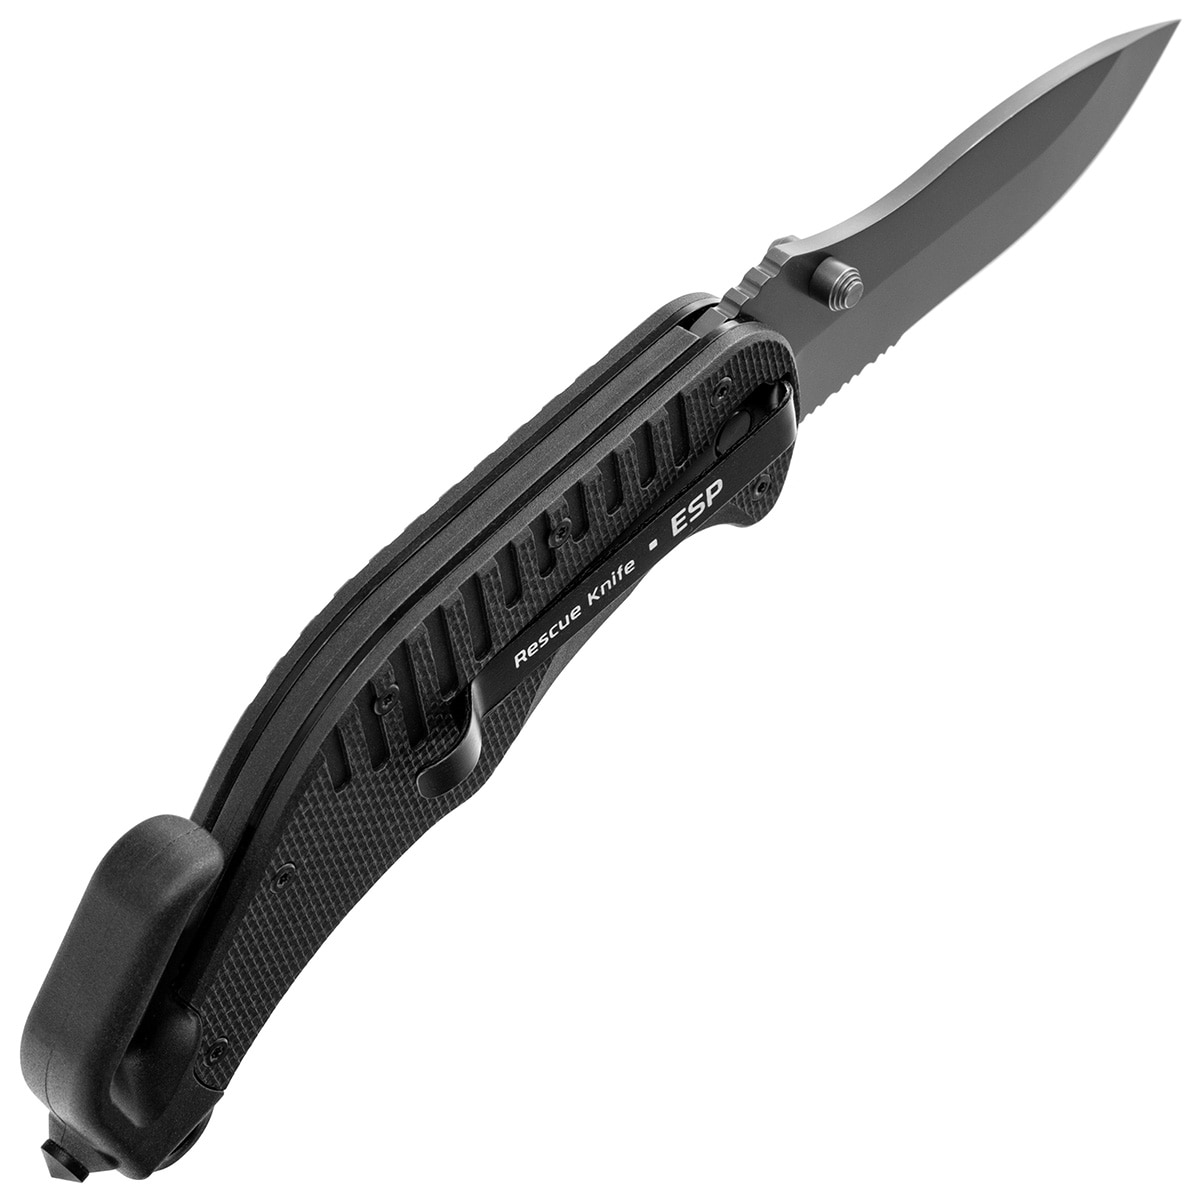 Nóż składany ratowniczy ESP RK-01-S Rescue Knife - Black